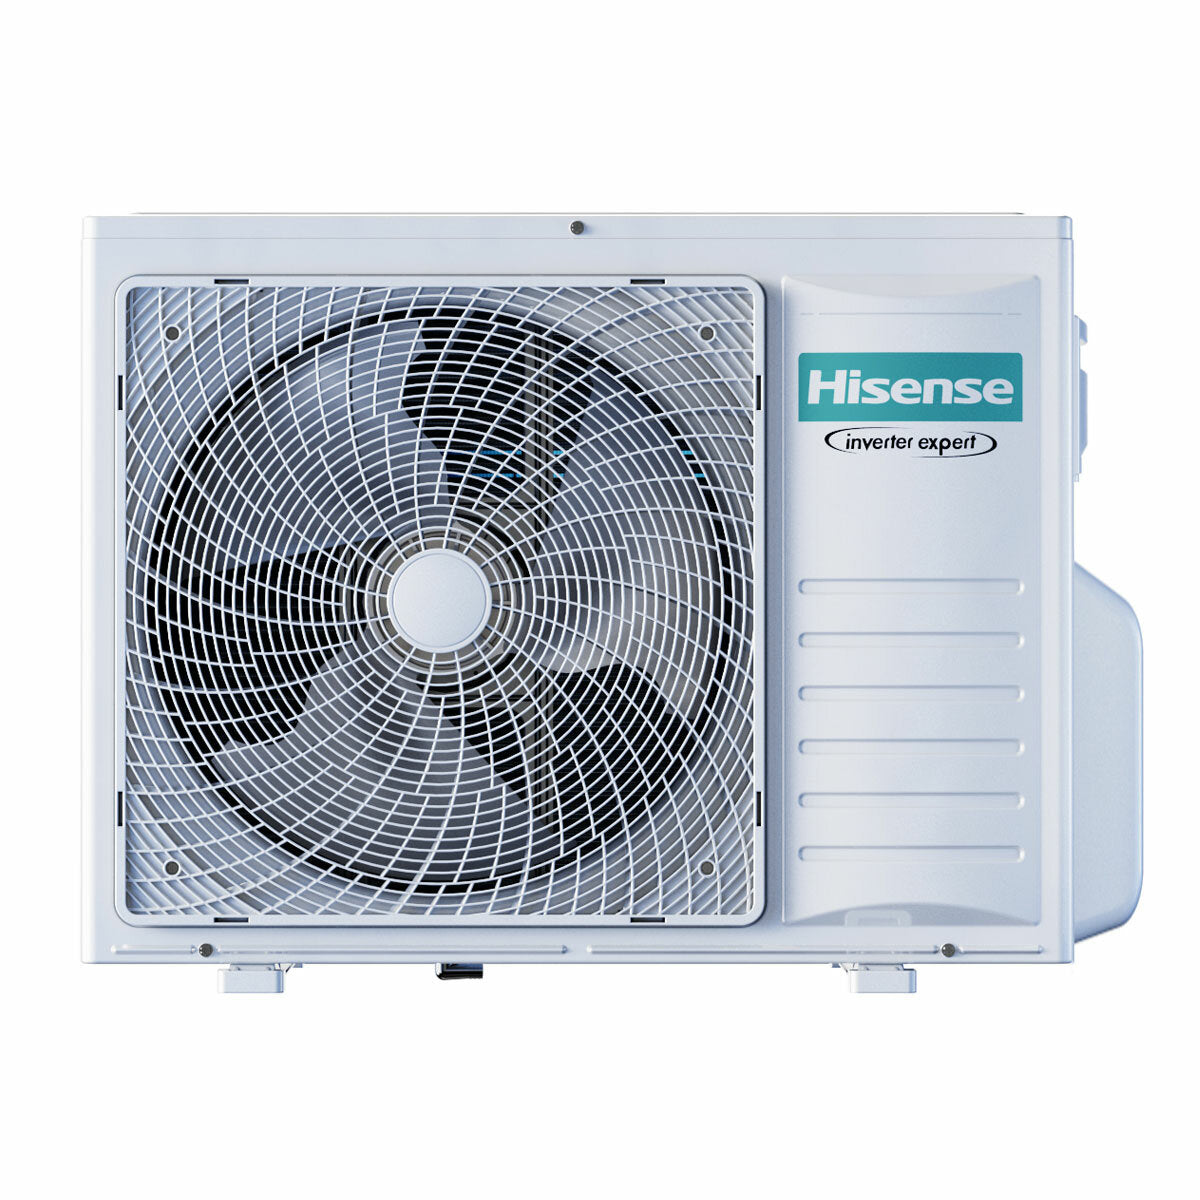 Hisense Hi-Comfort quadri split air conditioner 7000+7000+7000+7000 BTU inverter A++ wifi outdoor unit 8 kW